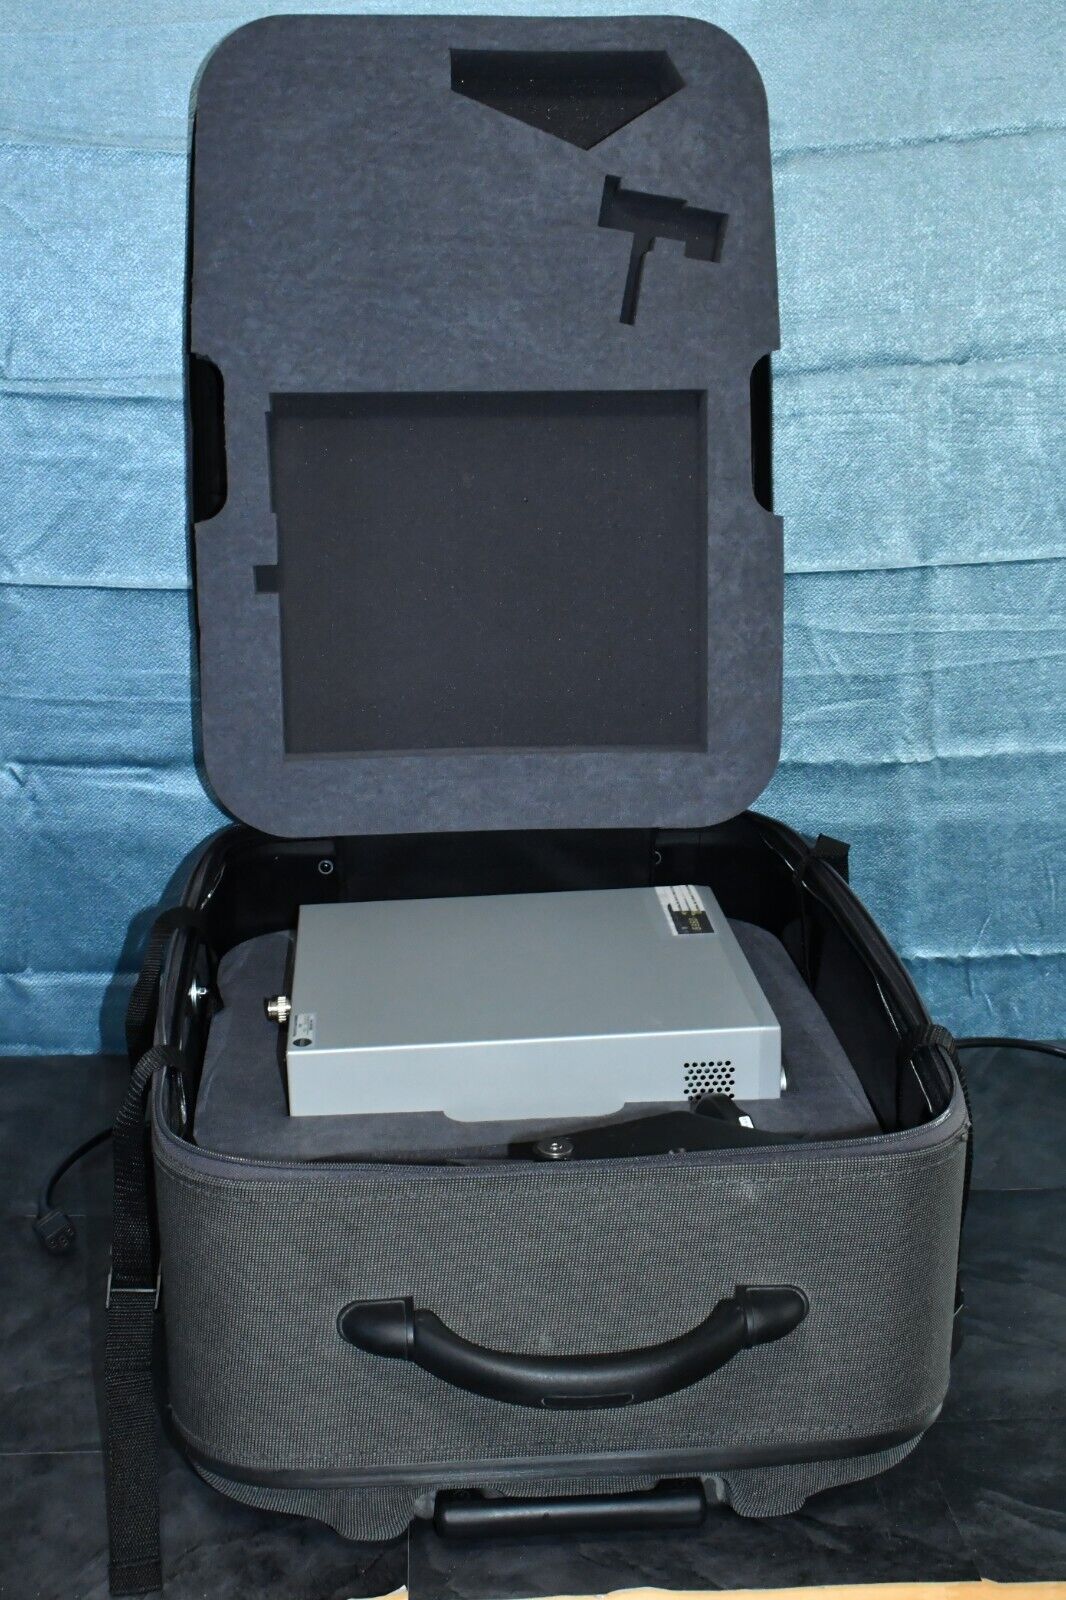 Ellex Solitaire Green laser with Haag Streit Adapter and storage case